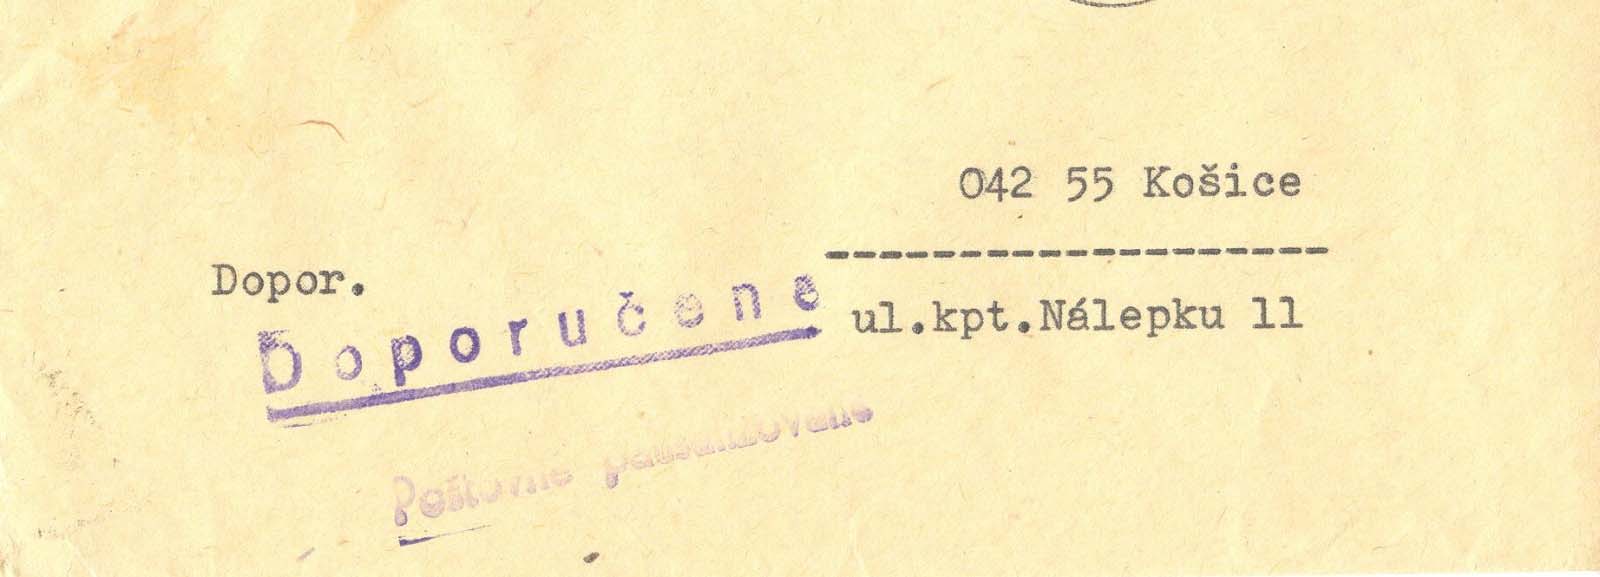 Dátum: 3. marec 1977 Odosielateľ: Okresný ústav národného zdravia, POPRAD Pečiatka IV.